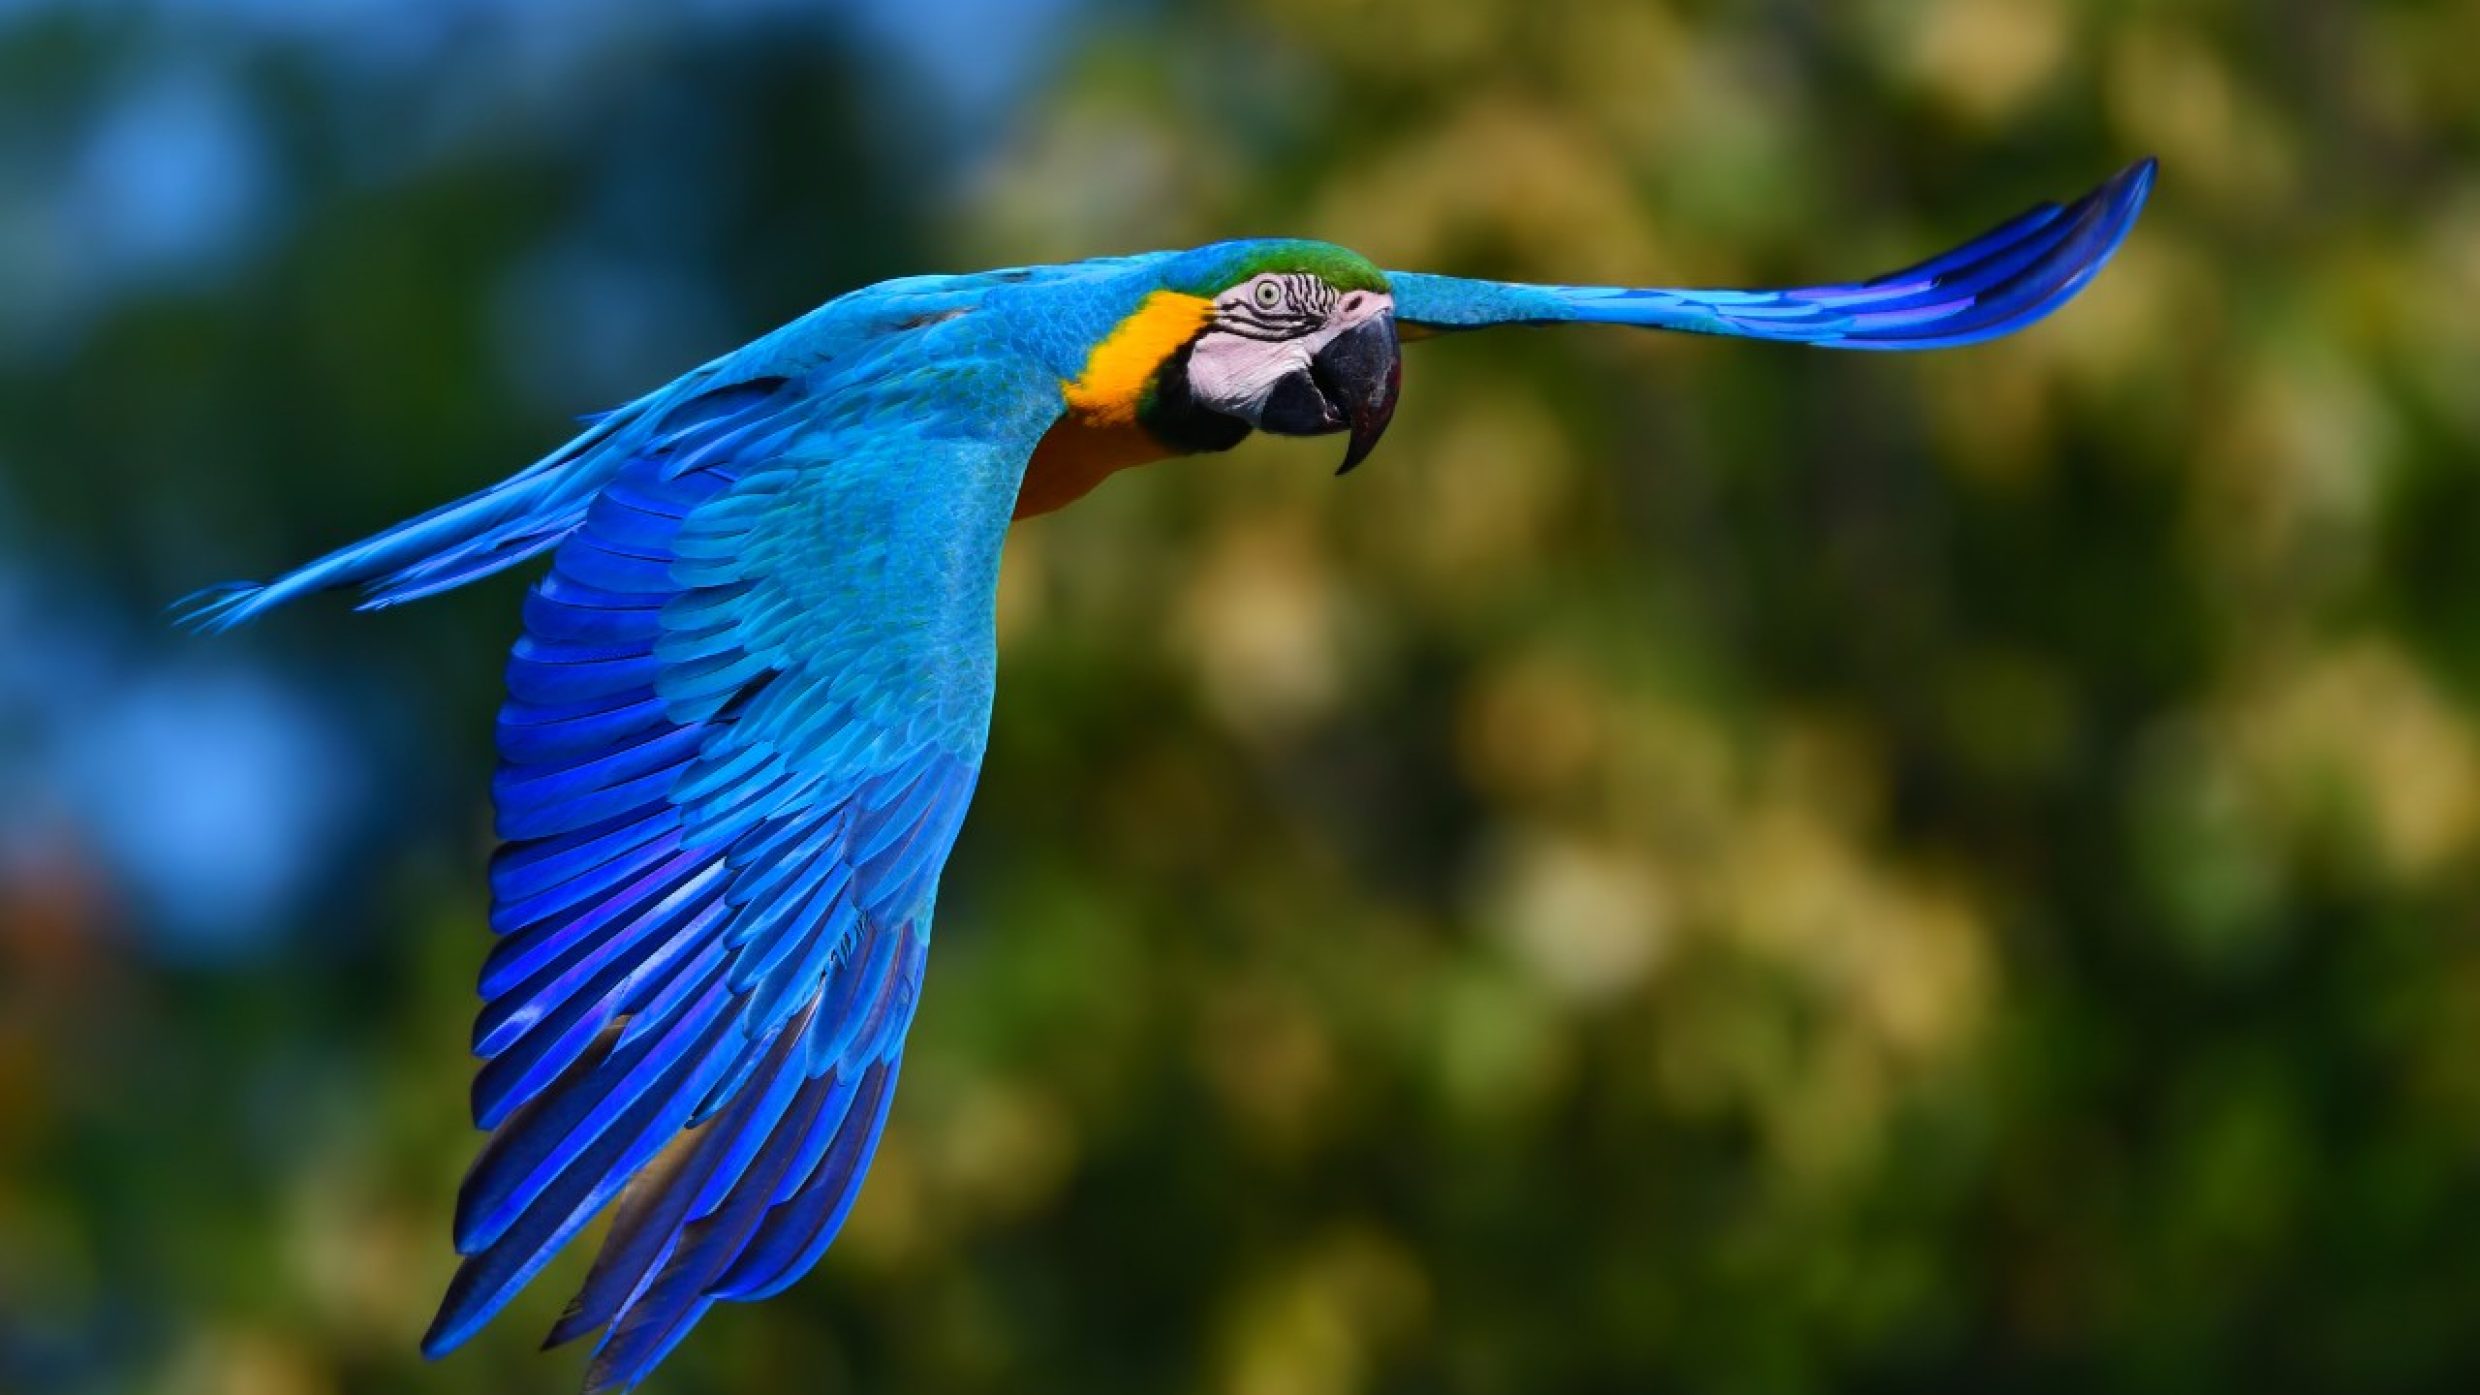 Papageien sind die einzigen Vögel, die älter werden können als wir Menschen. Die Lebenserwartung liegt bei bis zu 100 Jahren. Der älteste bekannte Gelbbrust-Ara ist in England sogar 104 Jahre alt geworden.